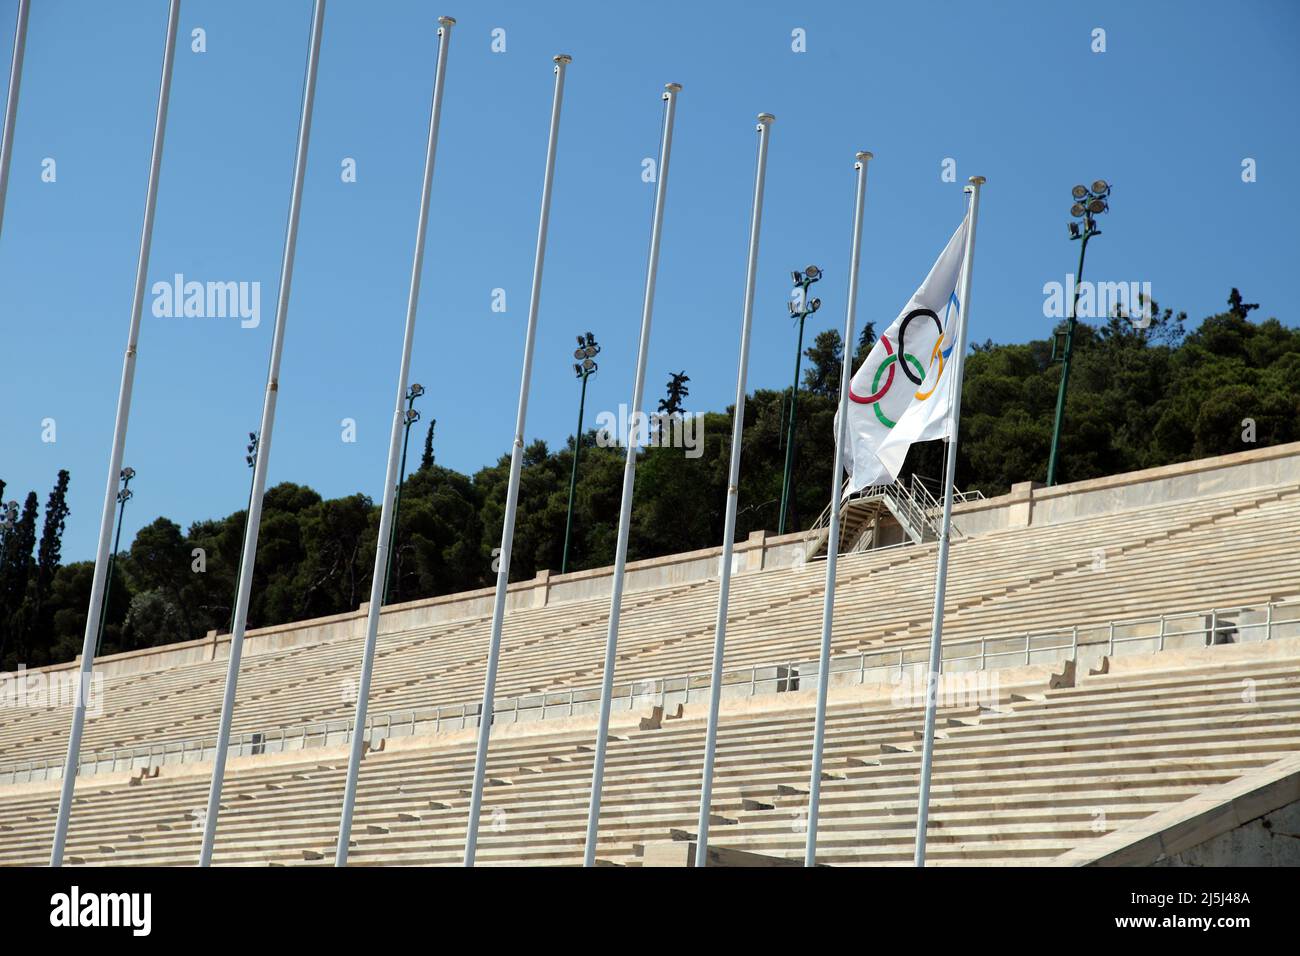 Stade panathénaïque ou Panathinaiko à Athènes, Grèce. Stadium est le stade le plus ancien au monde. Banque D'Images